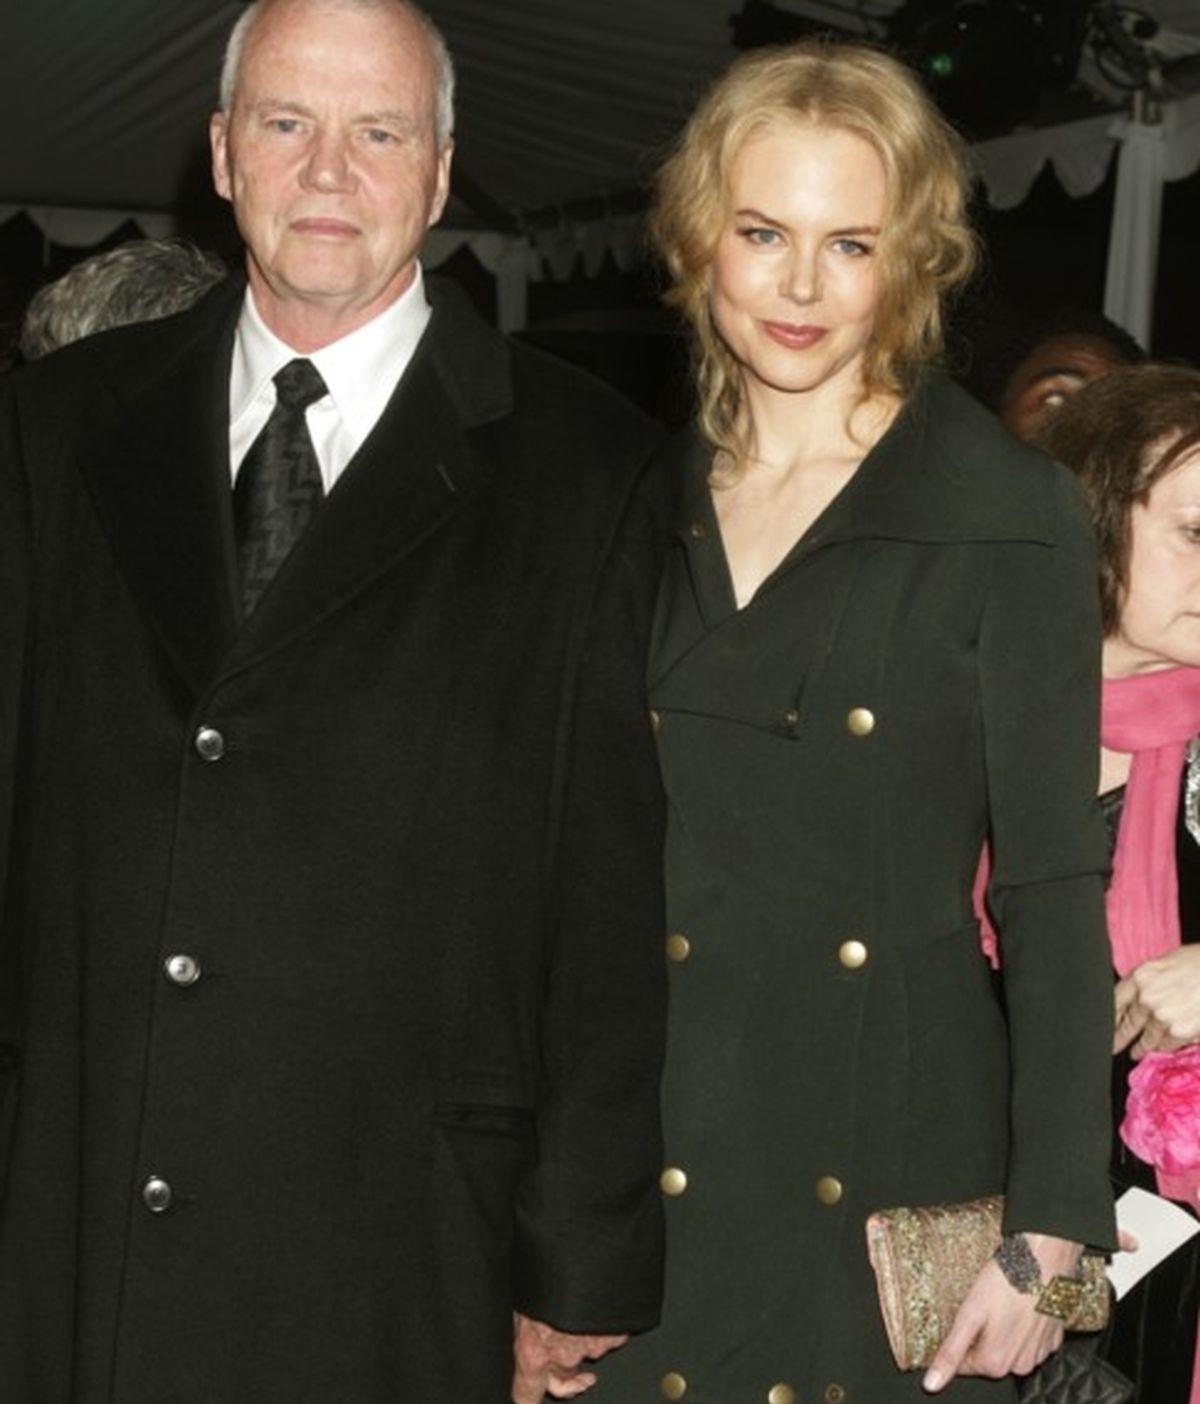 Fallece Toby Kidman, el padre de Nicole Kidman